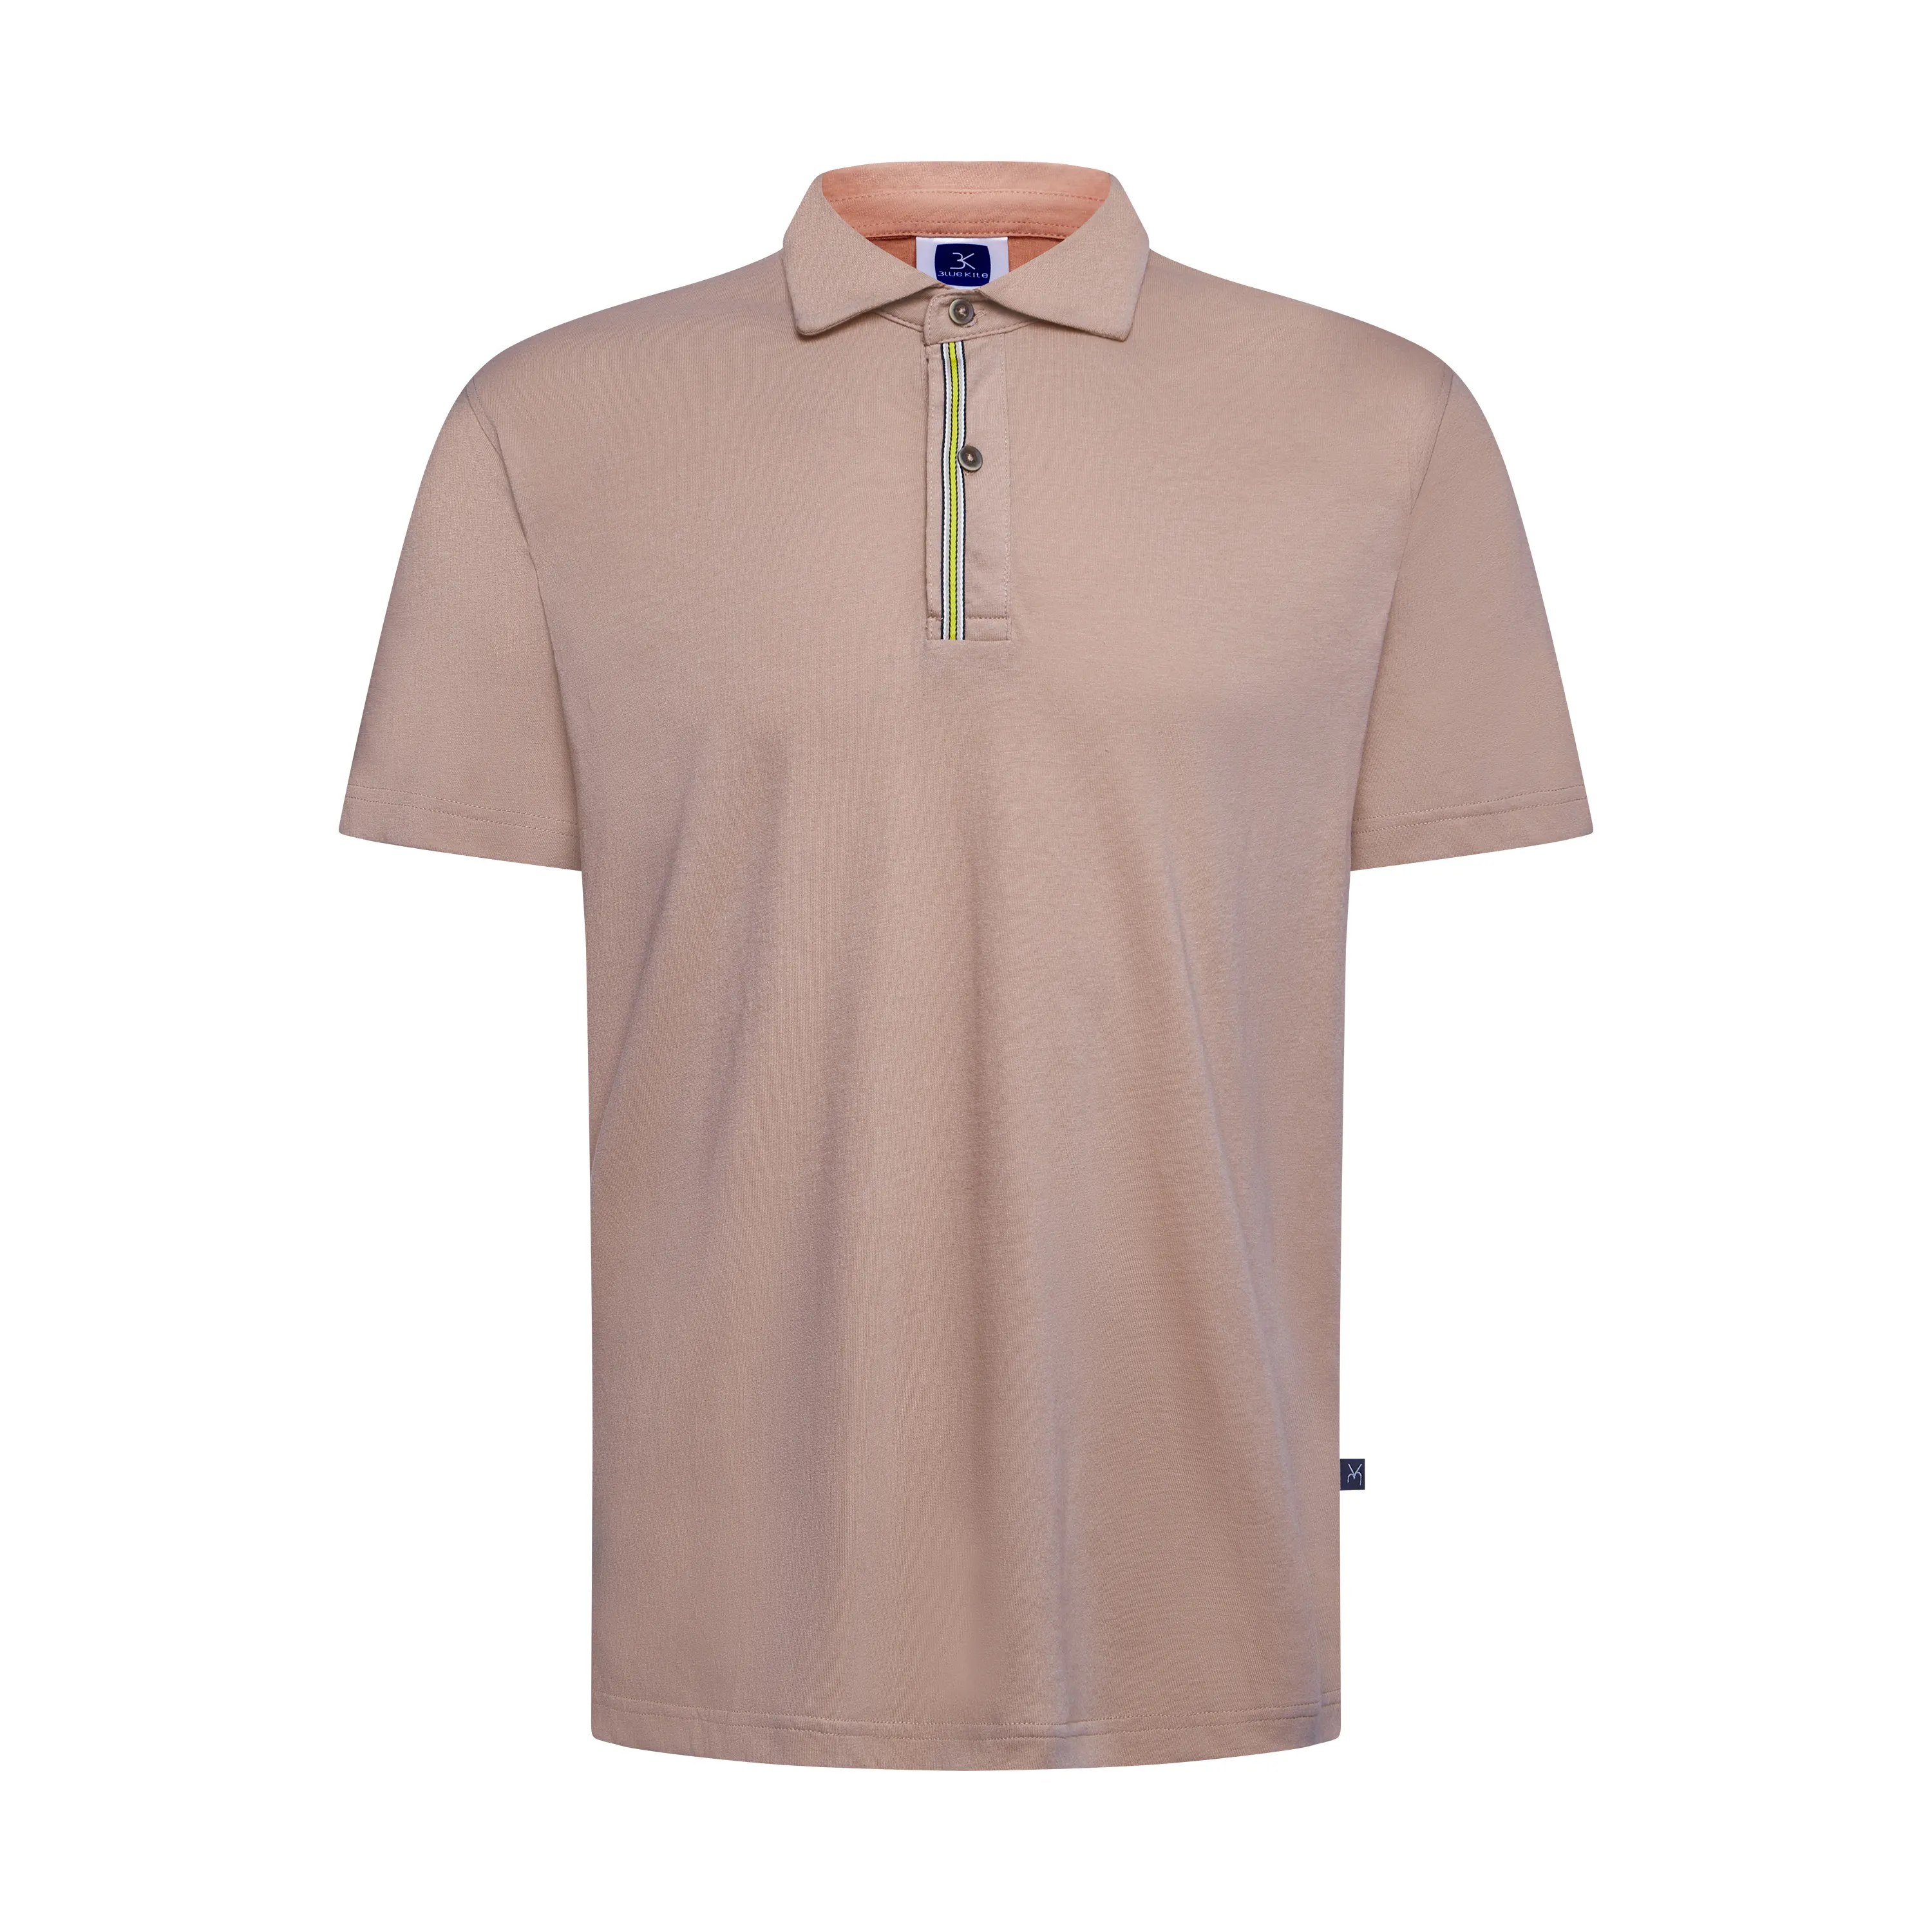 남성 의류 하이 퀄리티 폴로 셔츠 남성 작업 유니폼 남여 공용 폴로 셔츠 탄 Pham Gia 프리미엄 베트남 제조 업체